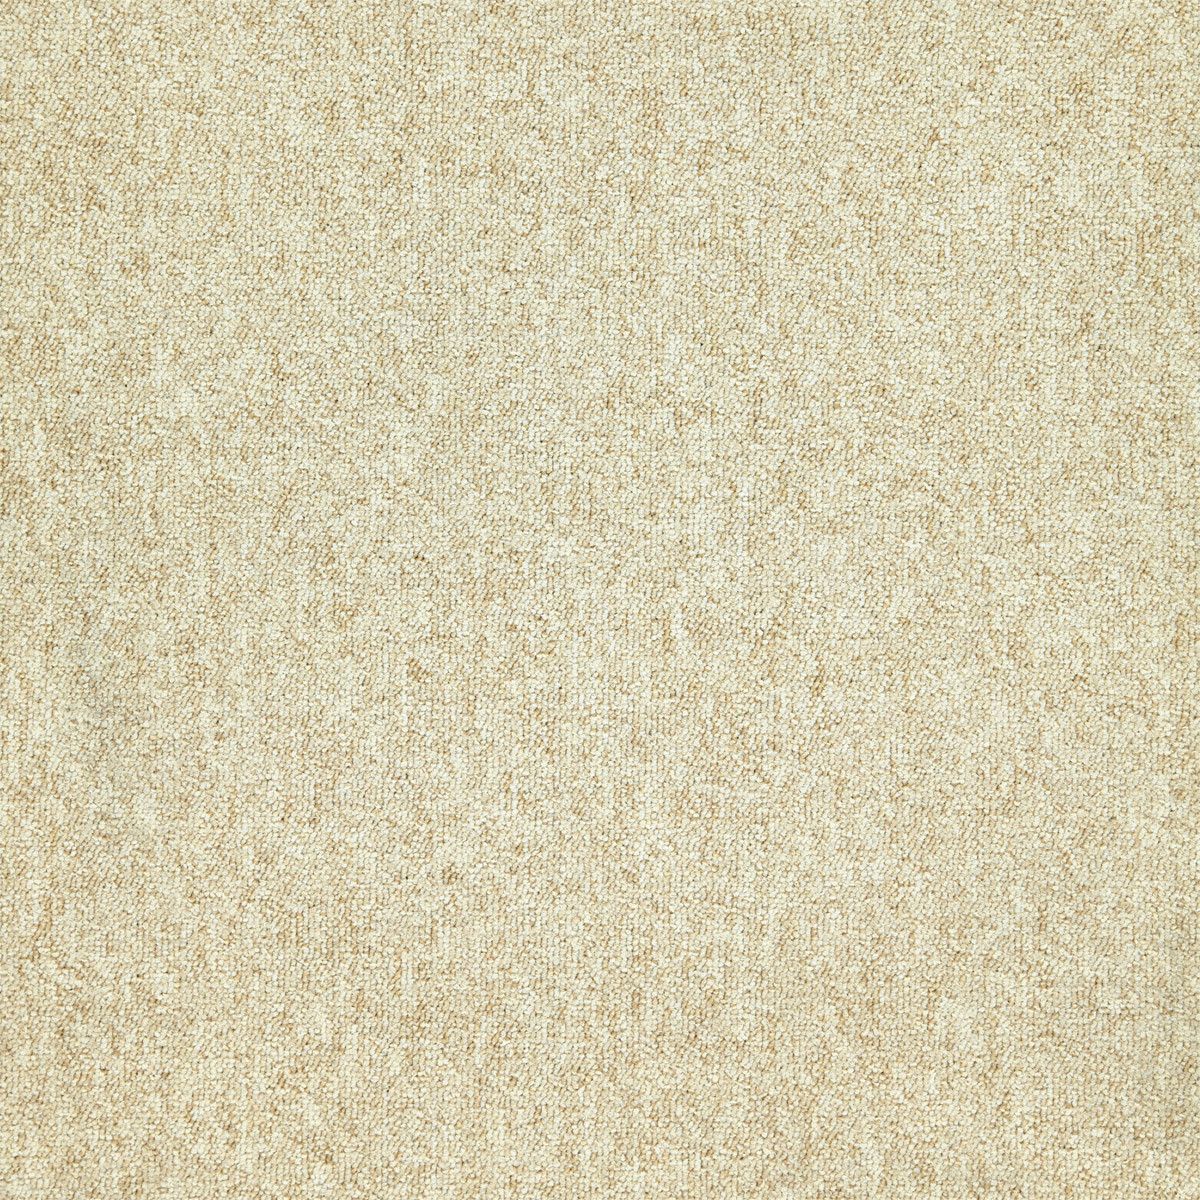 Balta koberce Kobercový čtverec Sonar 4472 přírodní béžová - 50x50 cm - Mujkoberec.cz